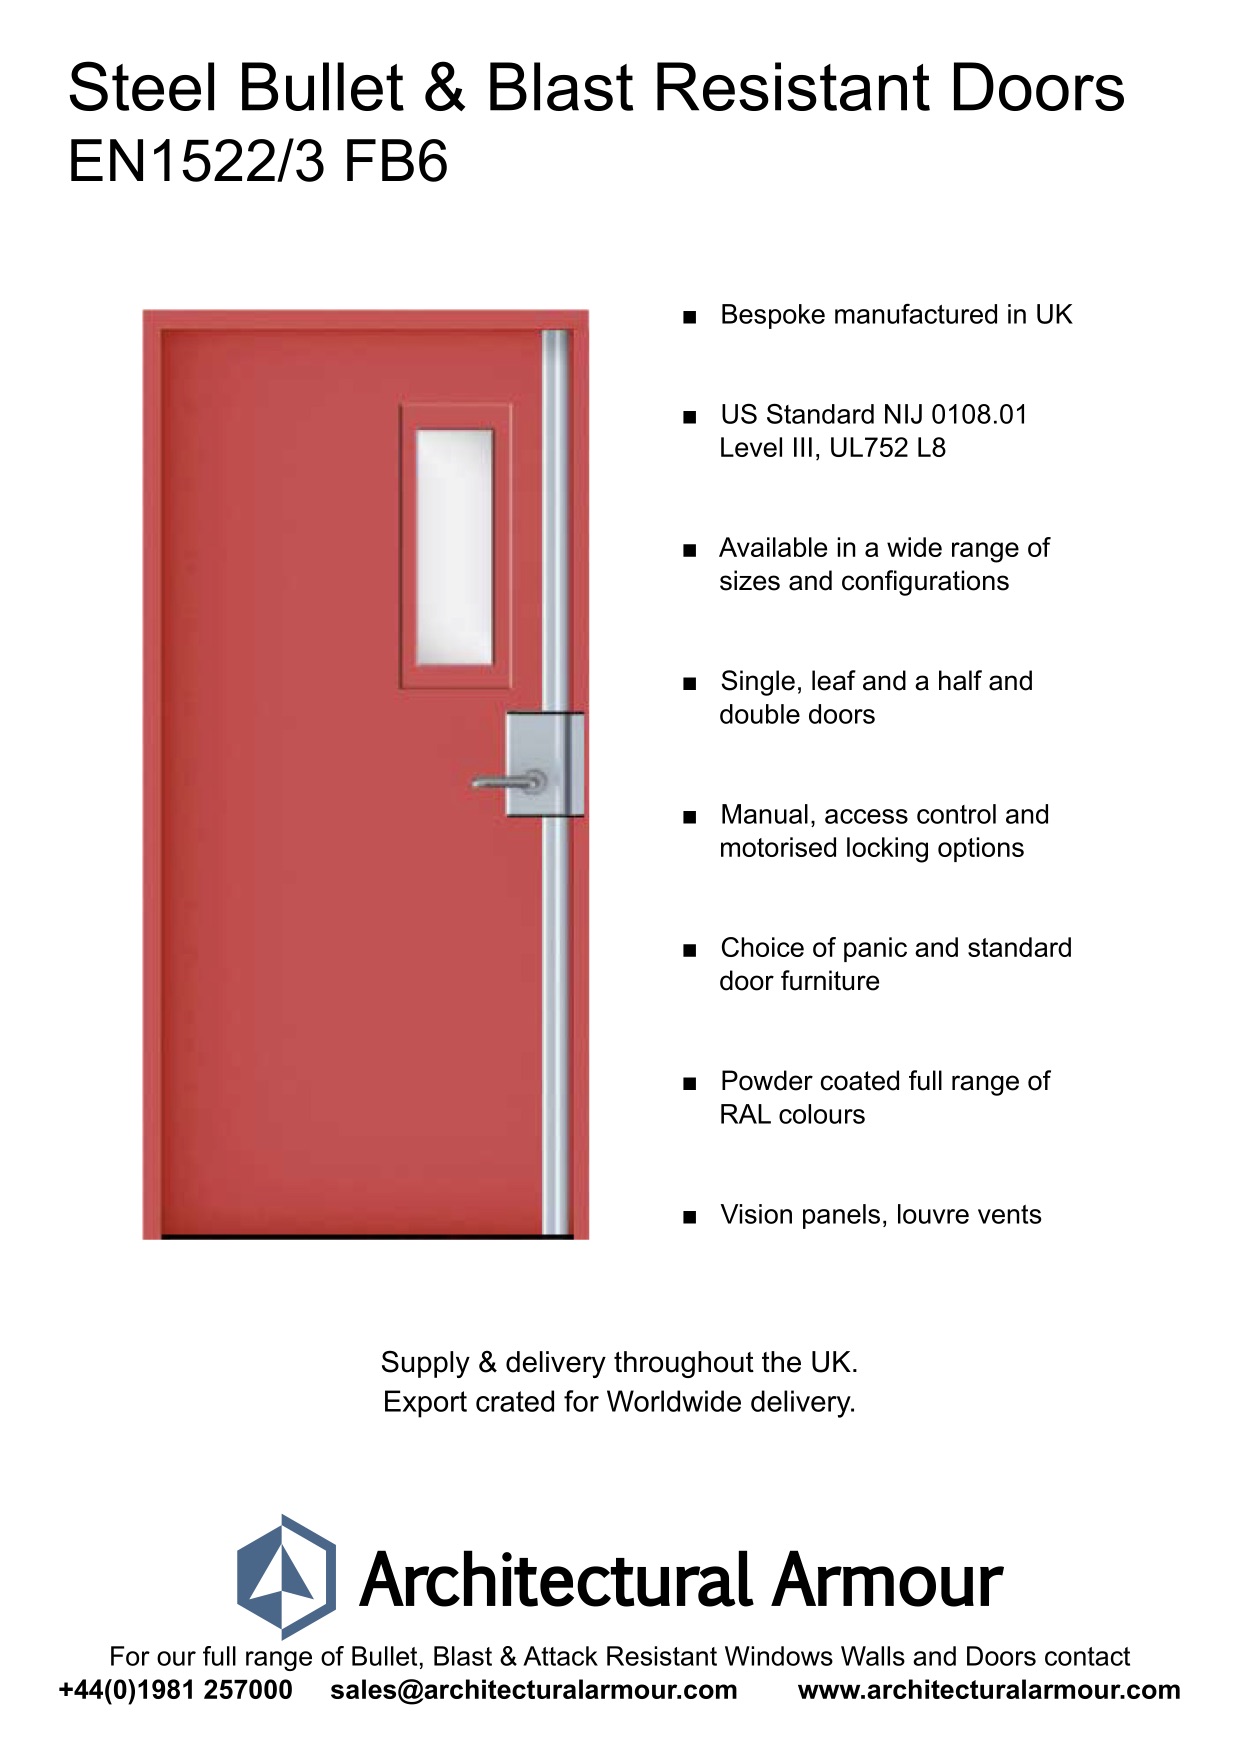 EN1522-3-FB6-Single-Slim-Vision-Panel-Blast-and-Bullet-Resistant-Steel-Door